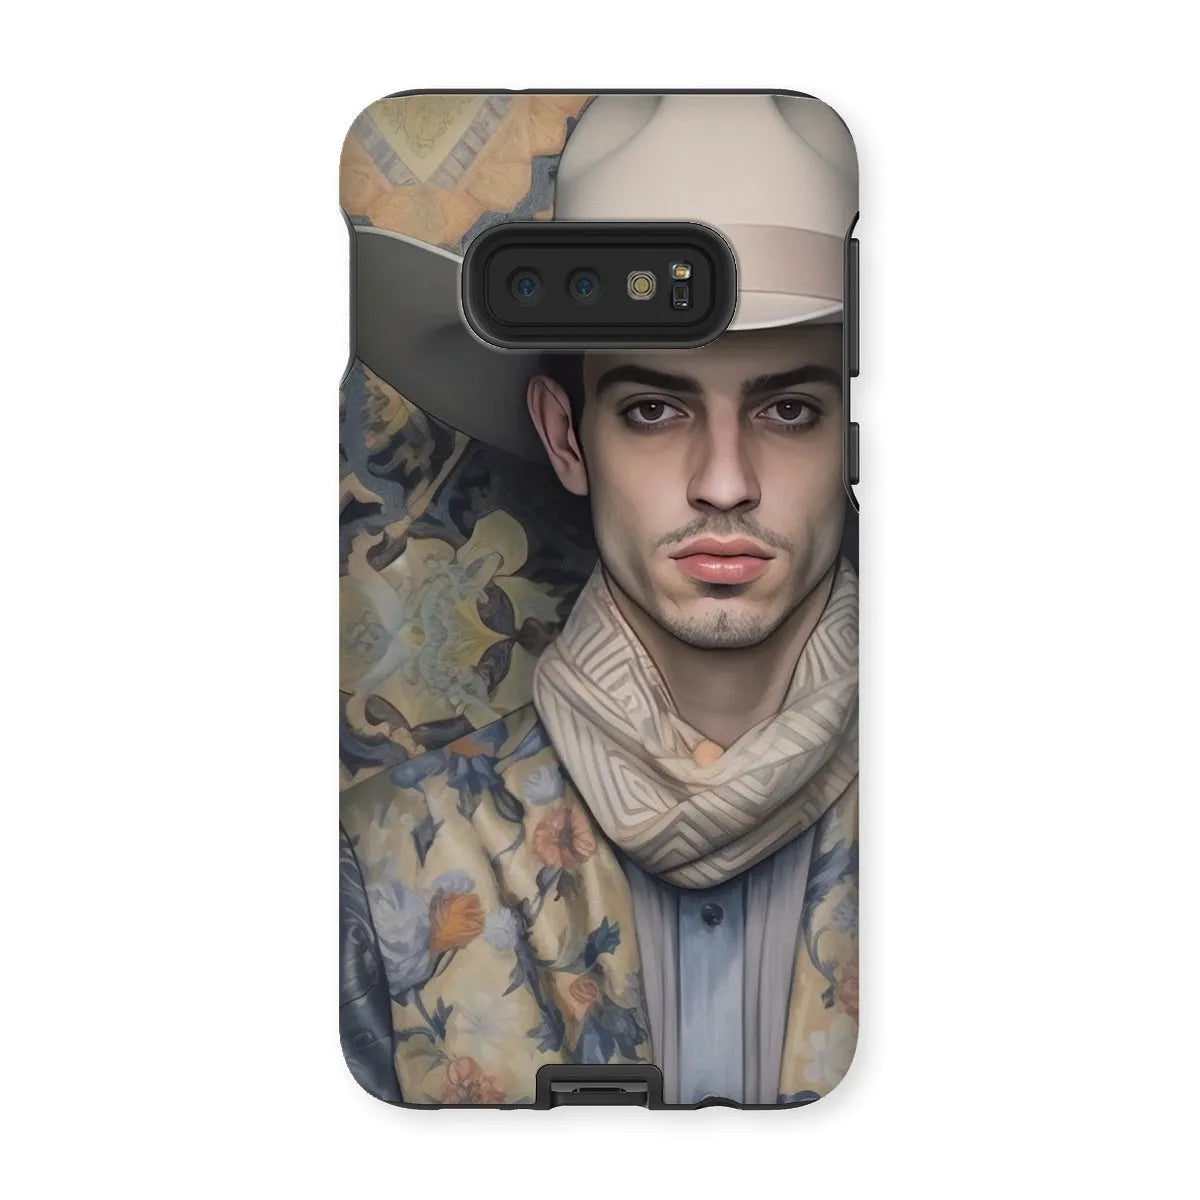 Farzad The Gay Cowboy - Dandy Gay Men Art Phone Case - Samsung Galaxy S10e / Matte - Mobile Phone Cases - Aesthetic Art